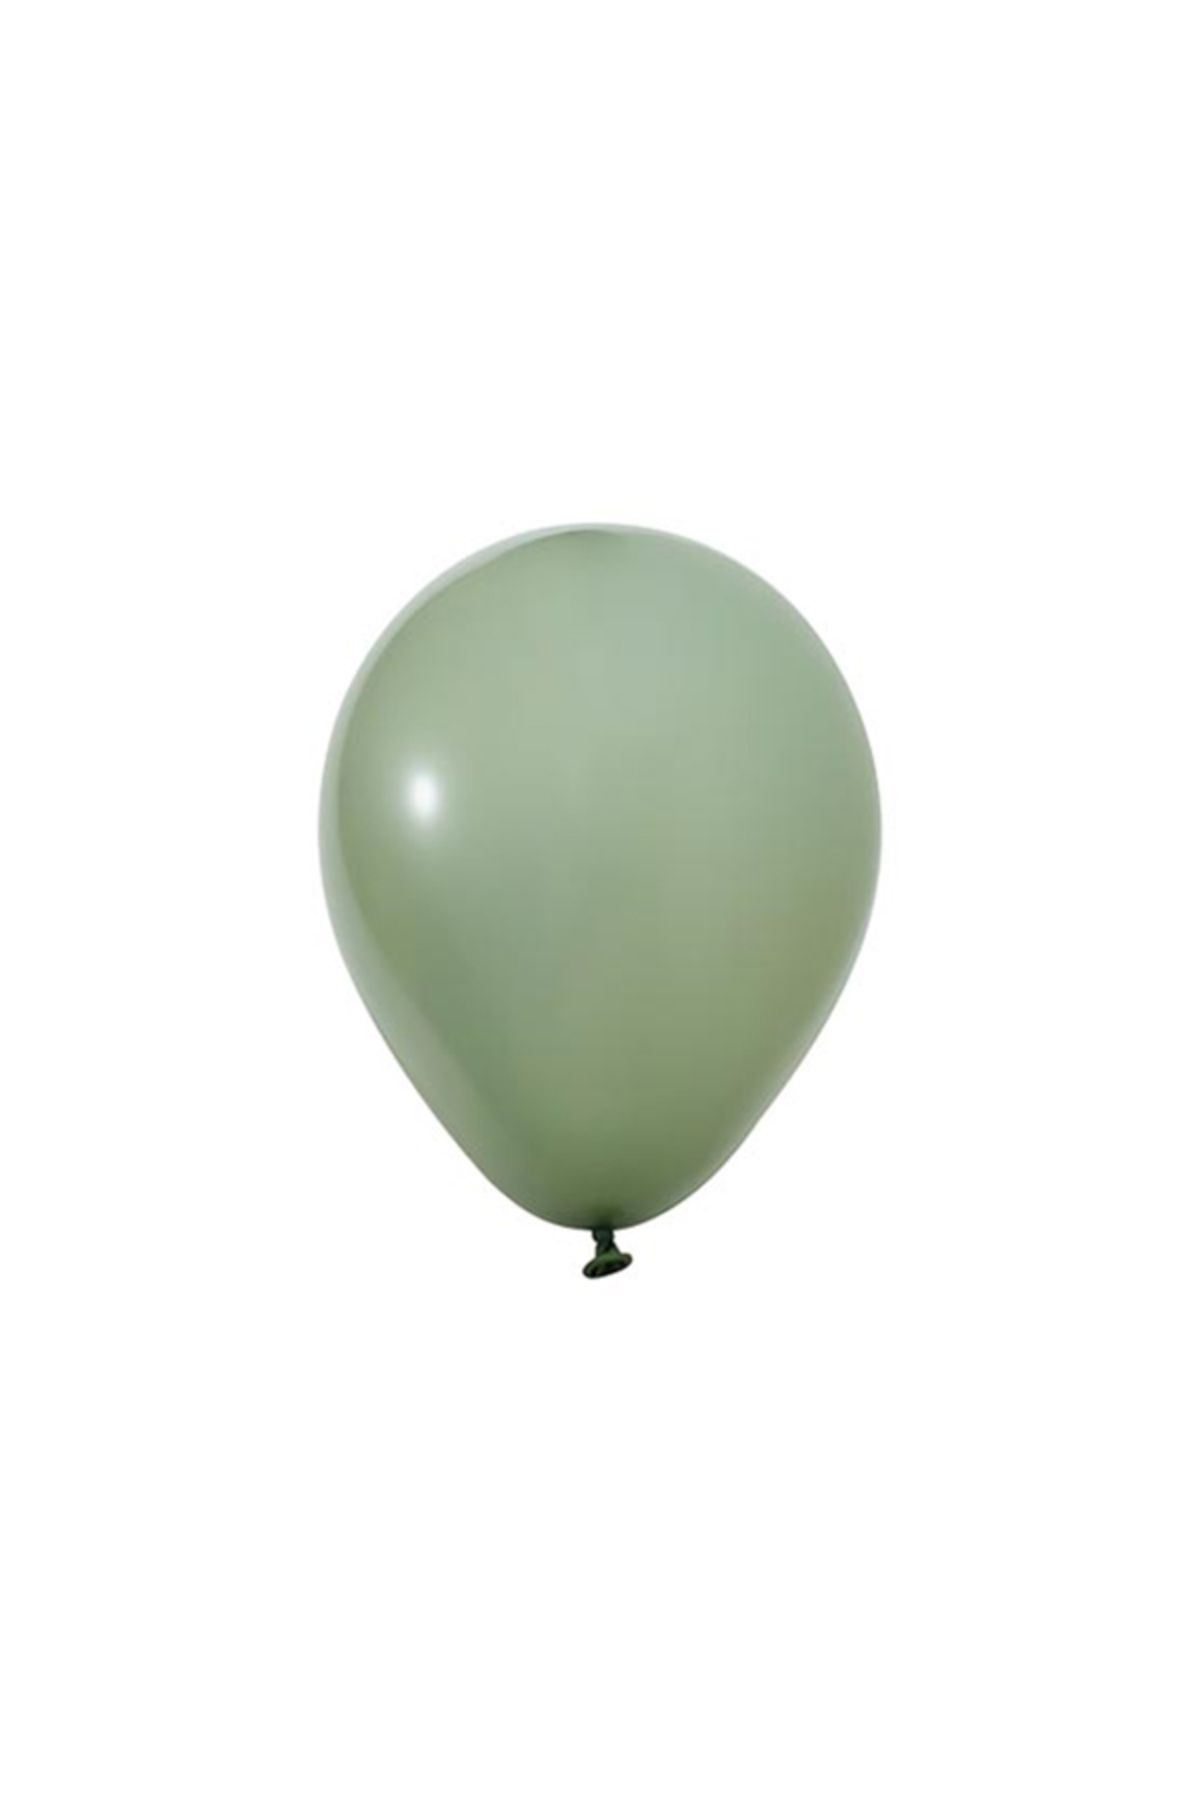 BALON HOME 12" Pastel Balon Seçenekleri (50 Adet), Çeşitli Renk Seçenekleri İle..